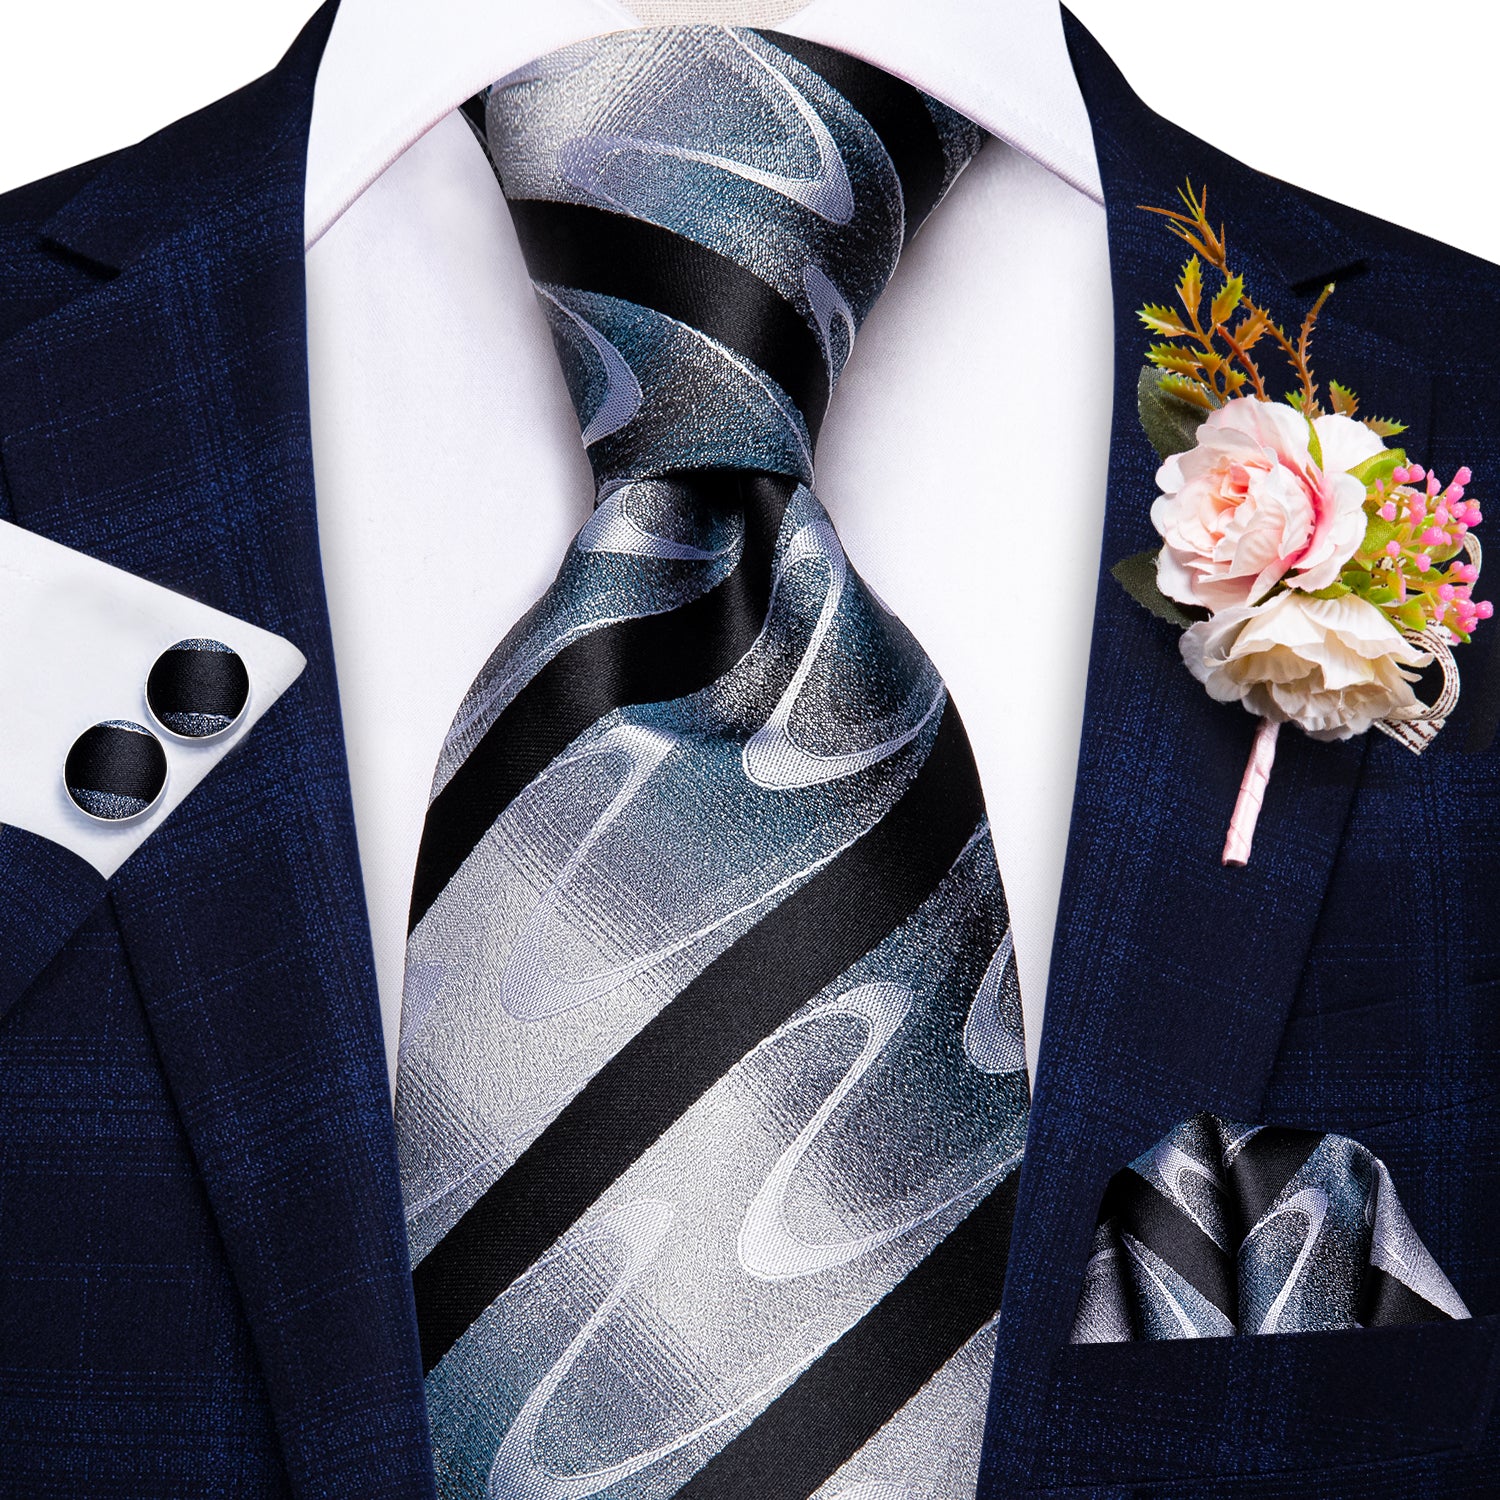 Black White Wave Striped Tie Handkerchief Cufflinks Set with Wedding Brooch